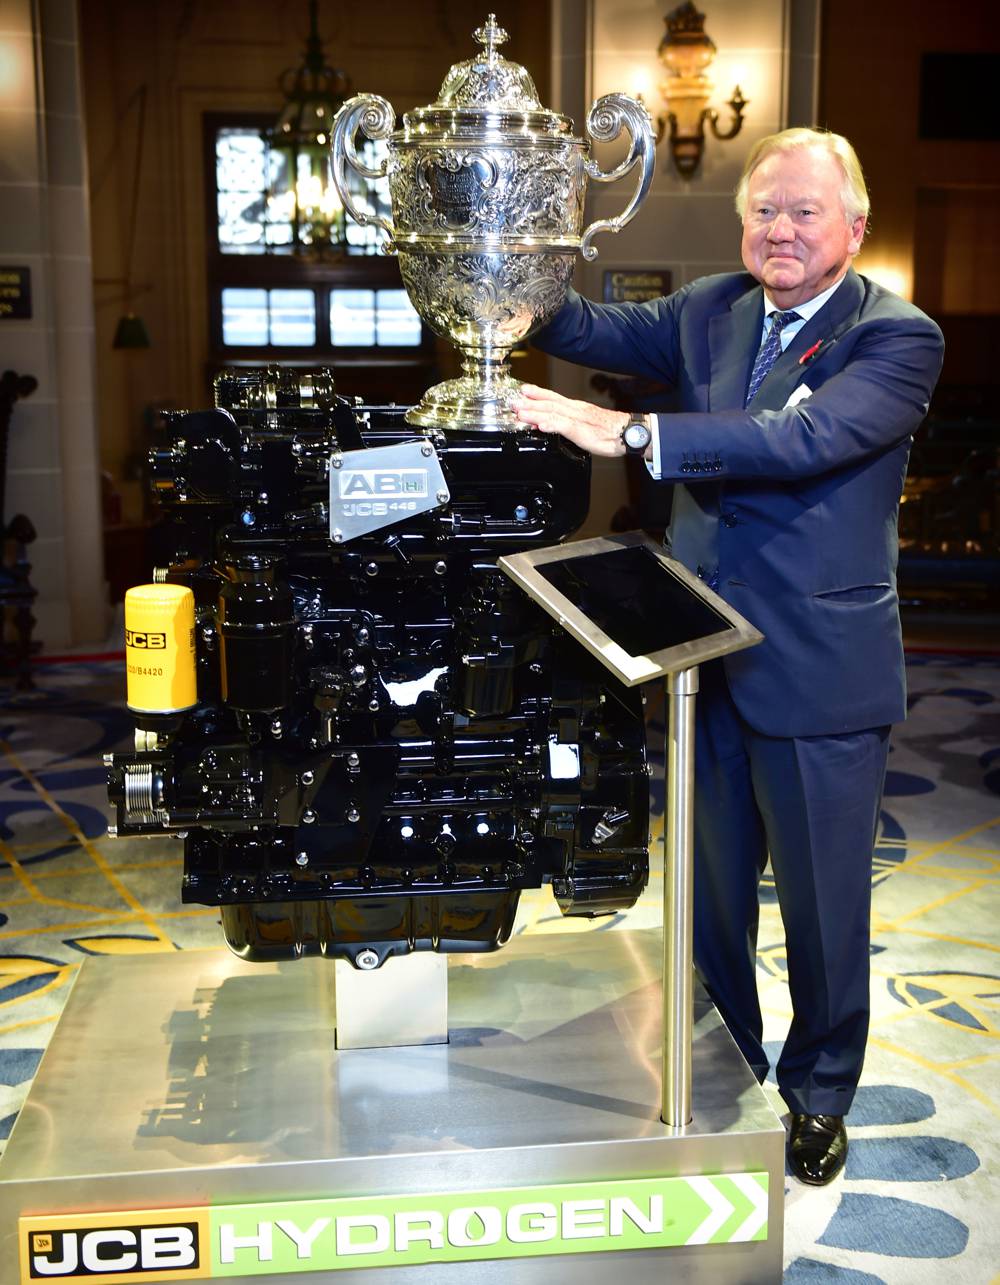 JCB celebrates their Hydrogen Engine winning British automotive engineering award